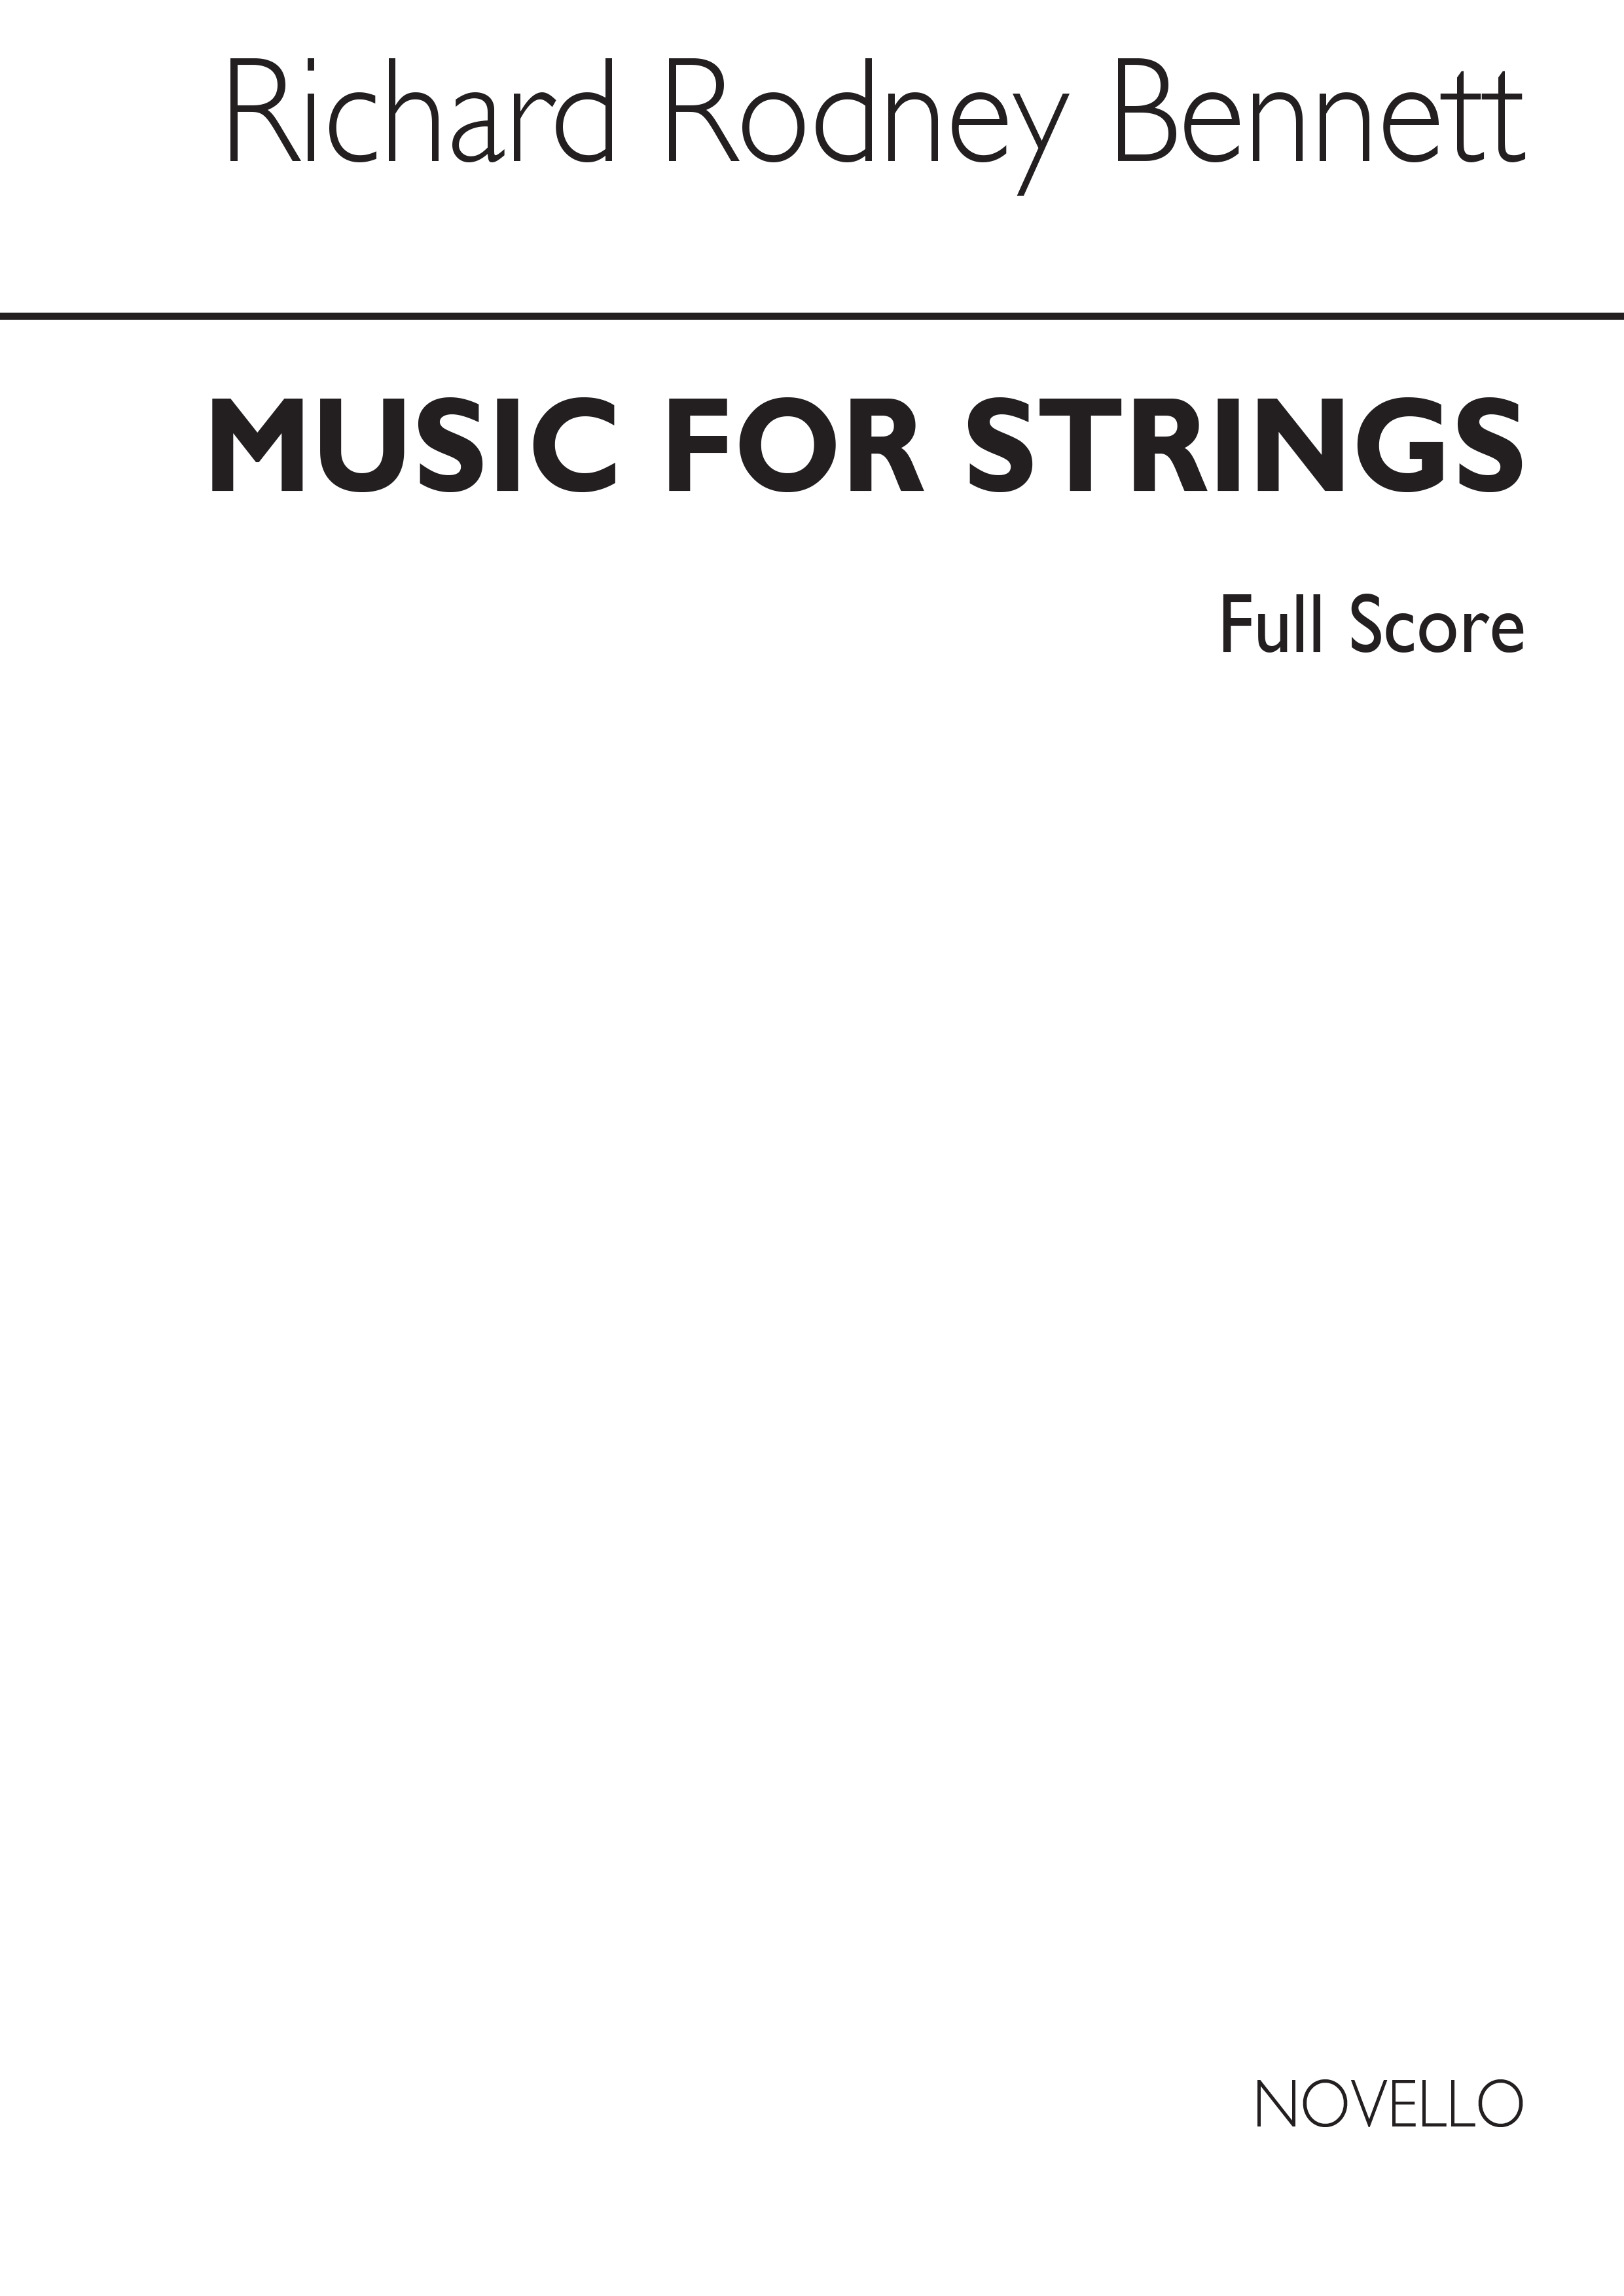 RR Bennett: Music For Strings